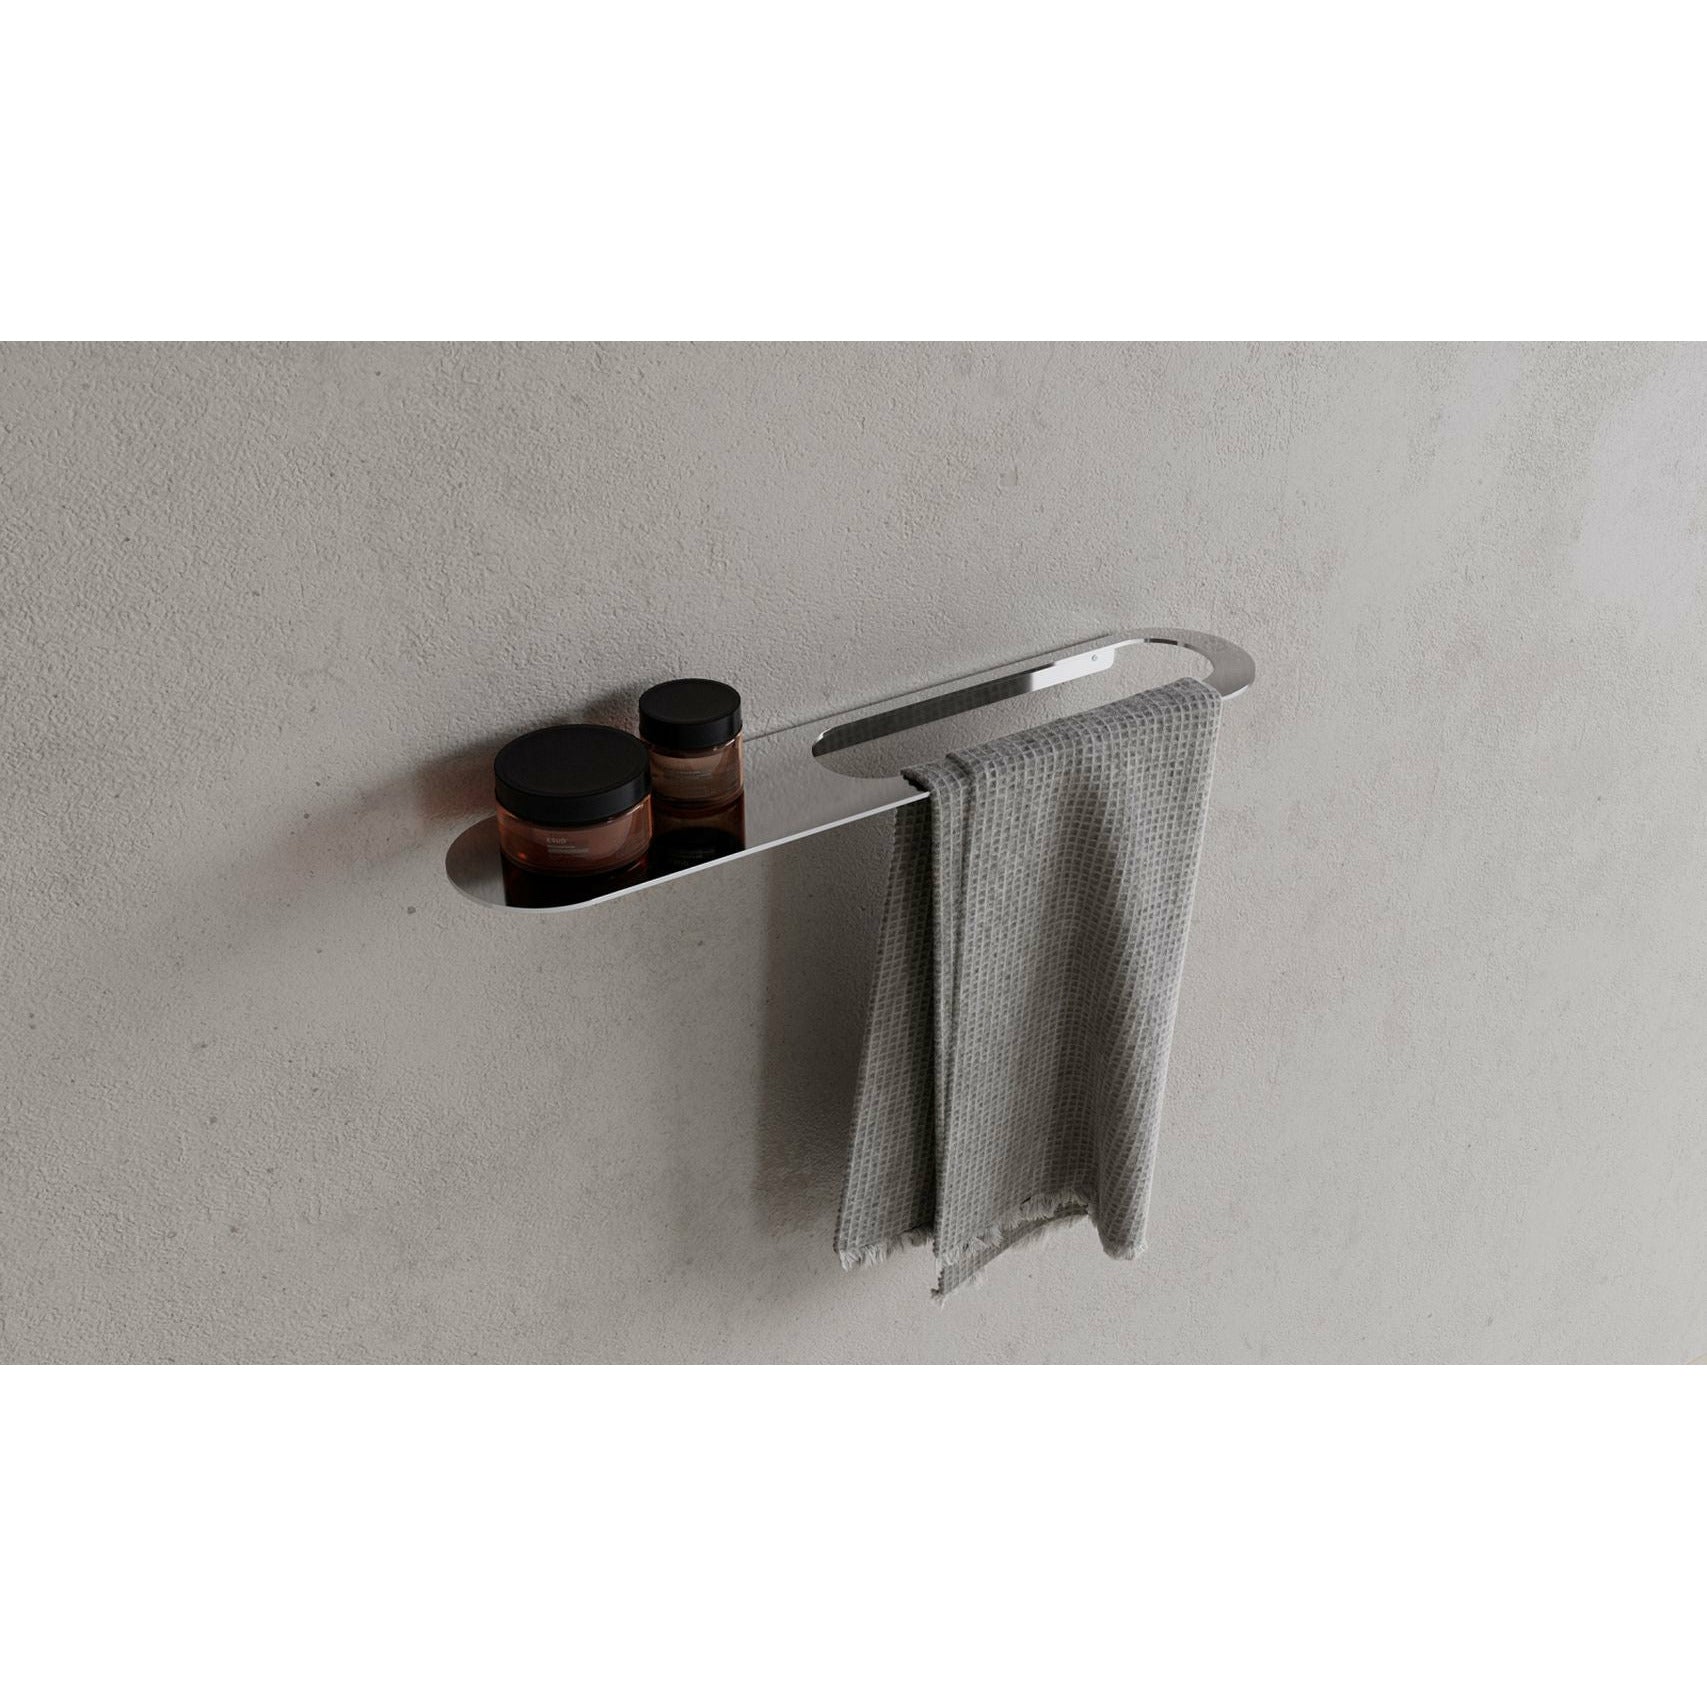 Copenhagen Bath Cb 100 Towel Holder With Shelf, Chrome